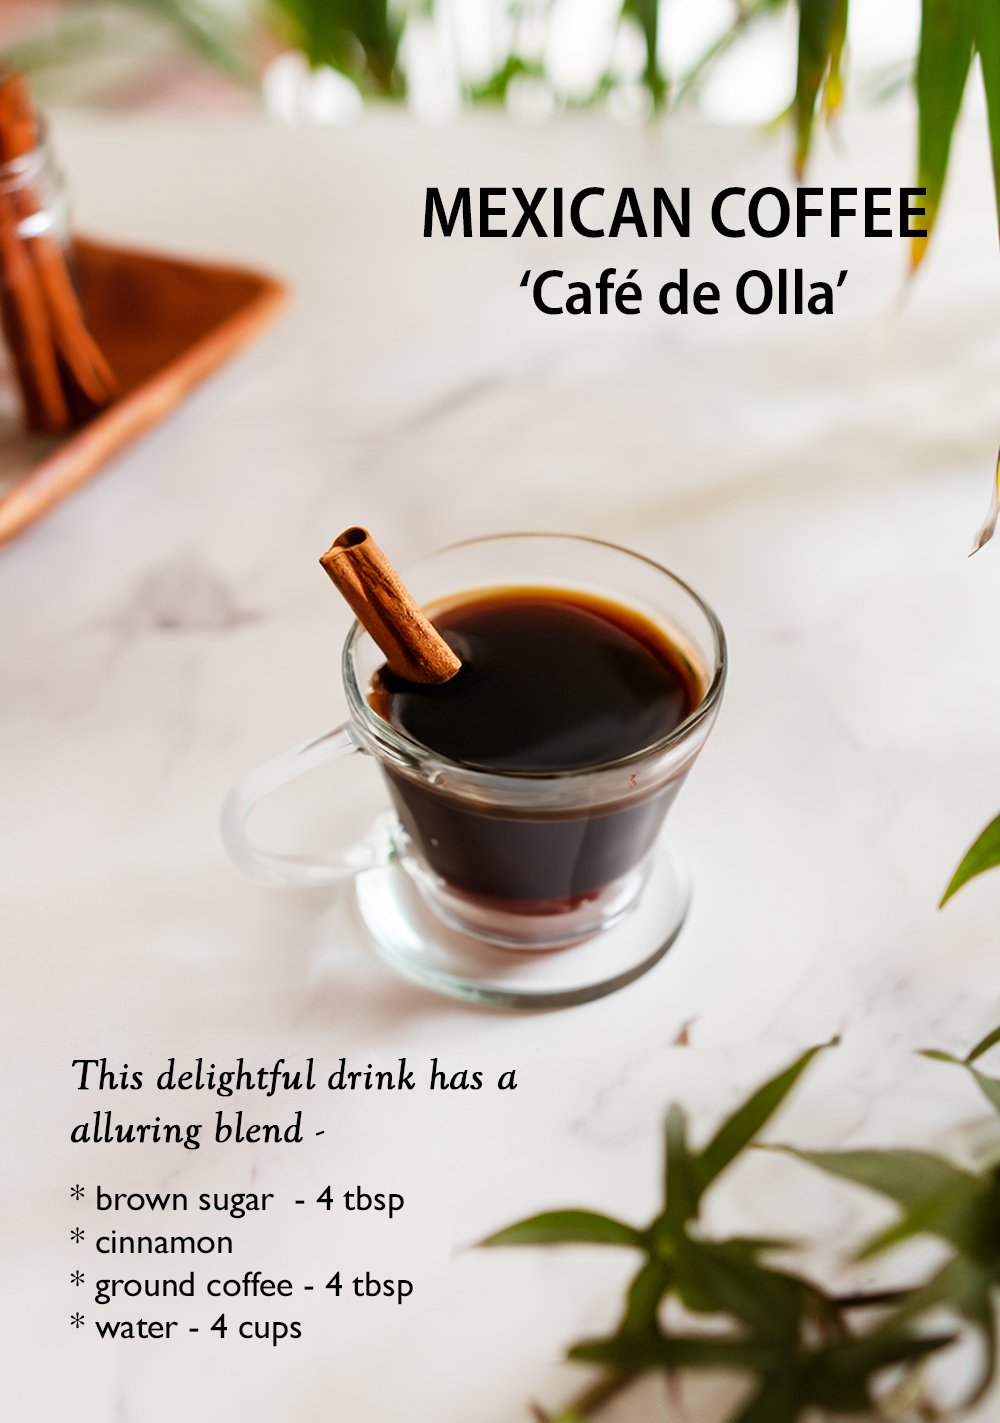 Mexican Coffee ‘Café de Olla’